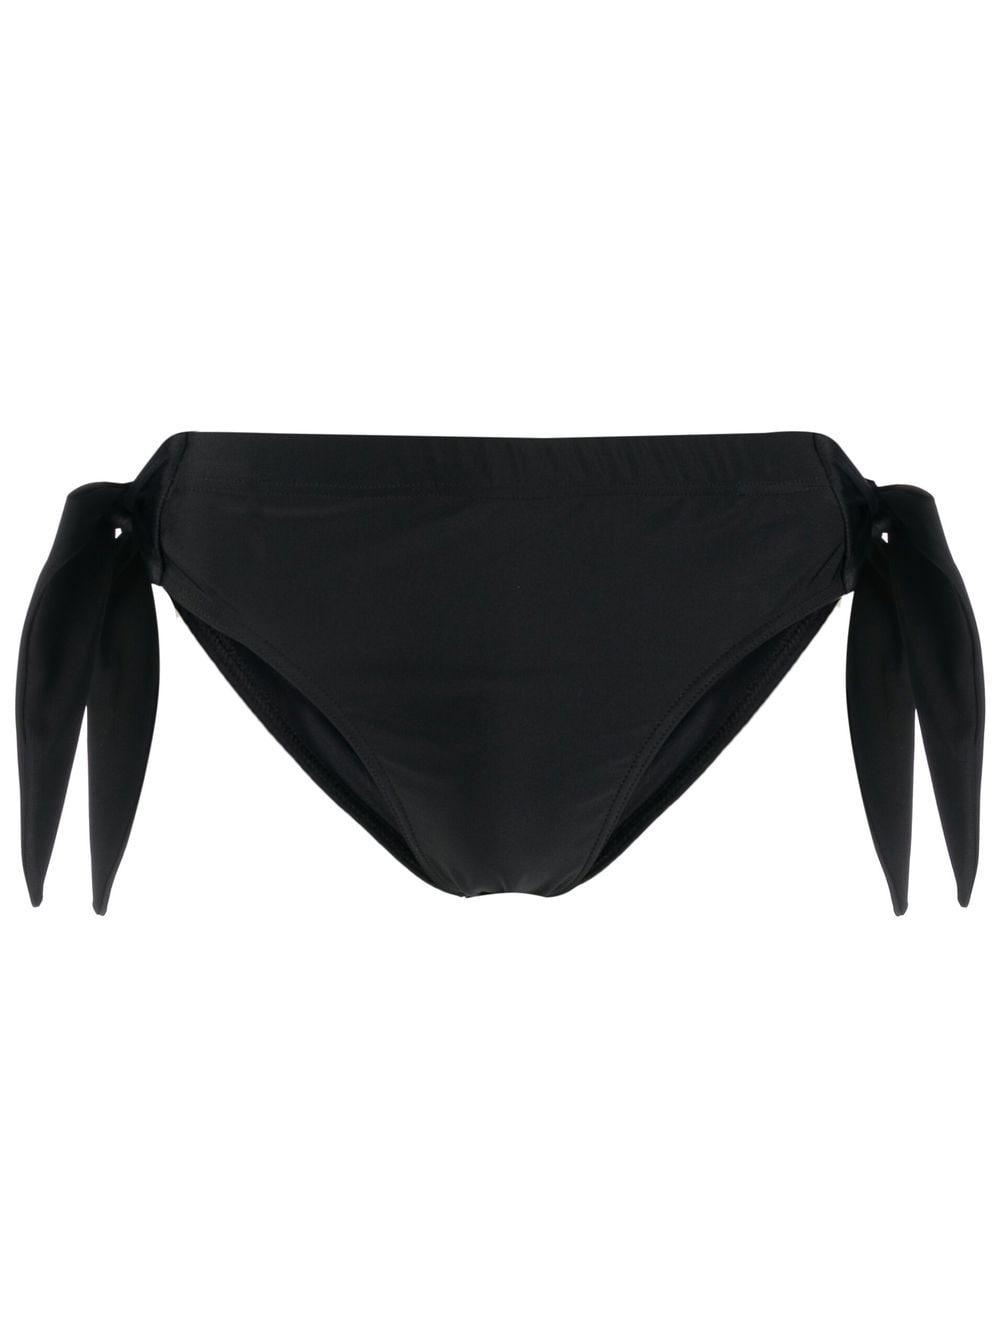 Jean Paul Gaultier Low-rise Side-tie Swim Trunks in Black for Men | Lyst